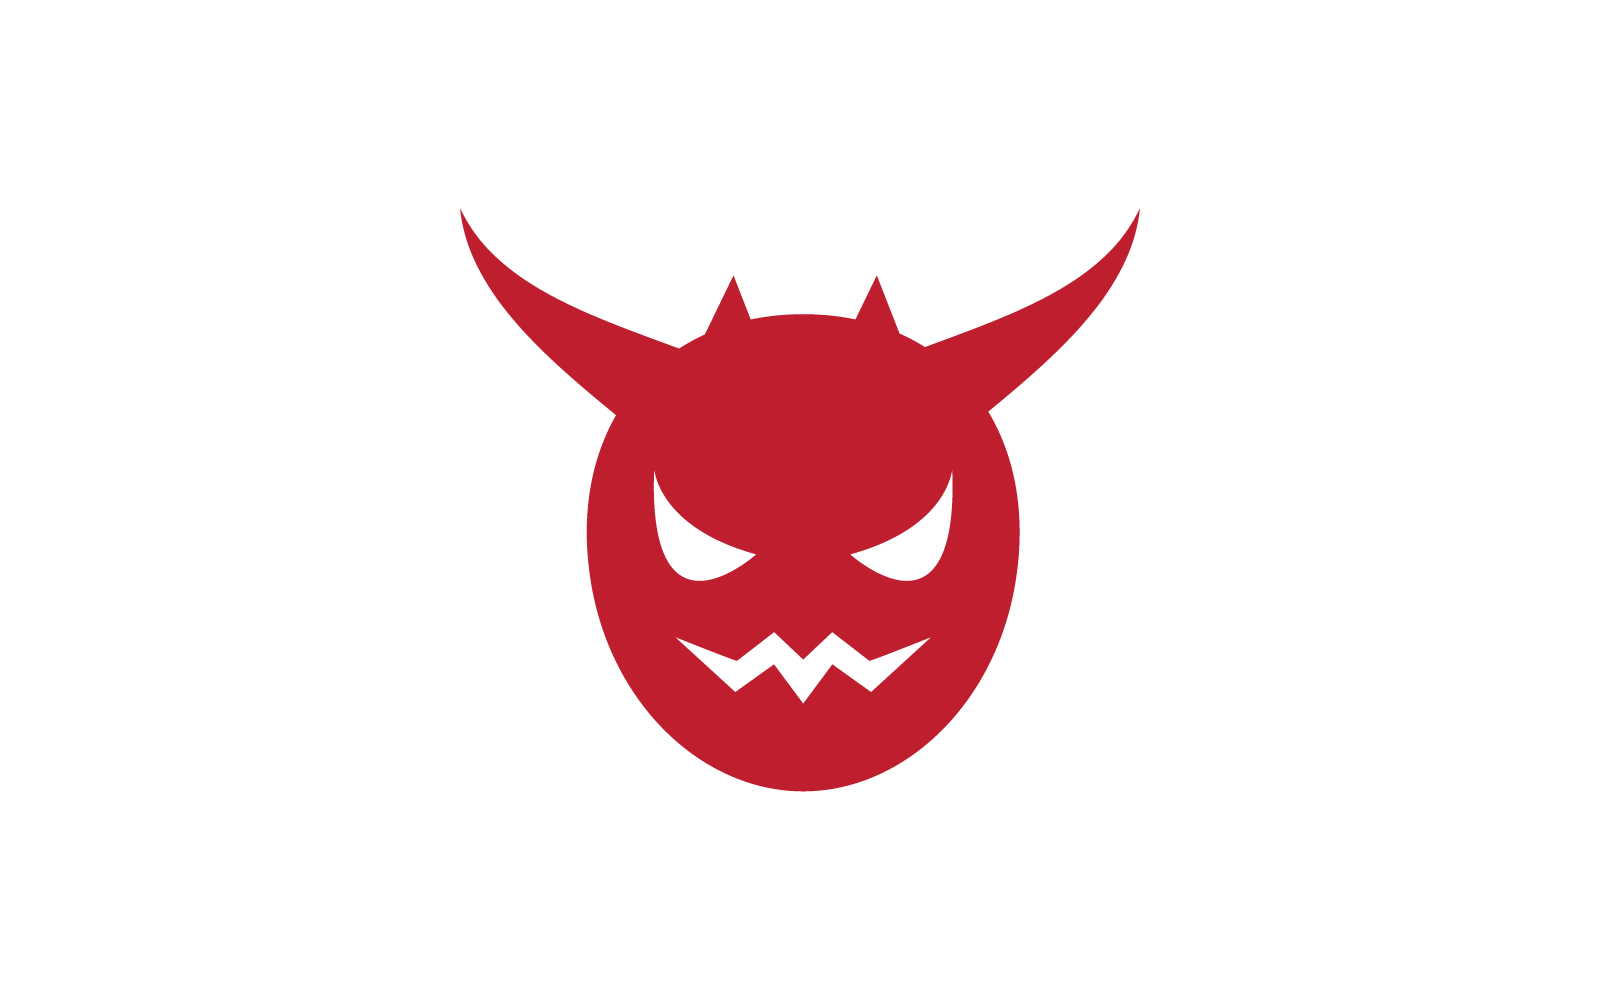 Devil logo ilustration vector template design